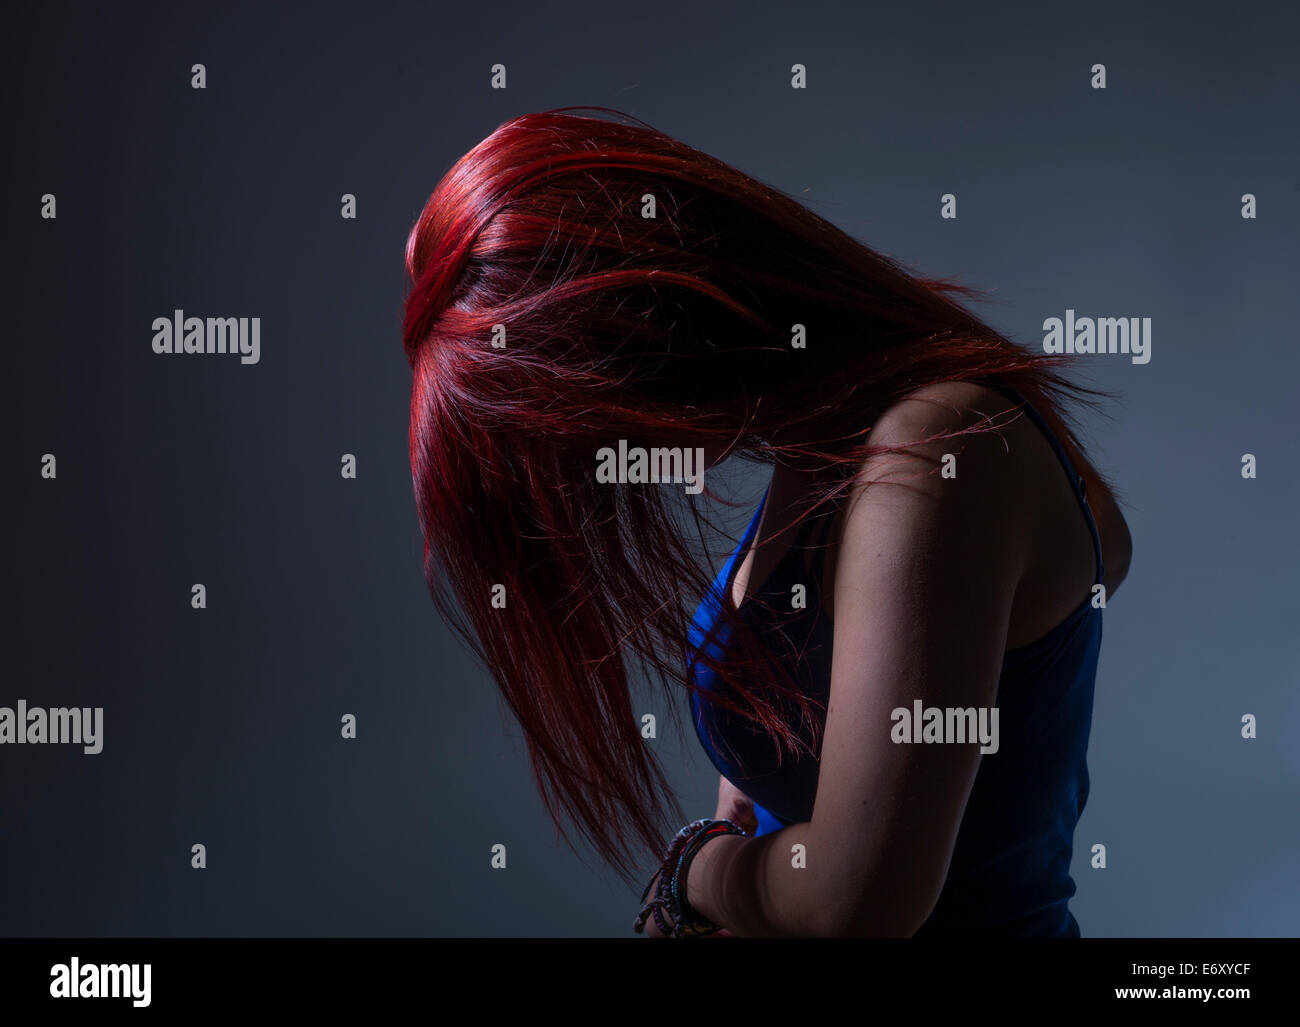 Tristesse / Dépression : Une jeune femme portrait de profil avec les cheveux teints en rouge vif, la tête inclinée de masquer son visage, UK Banque D'Images